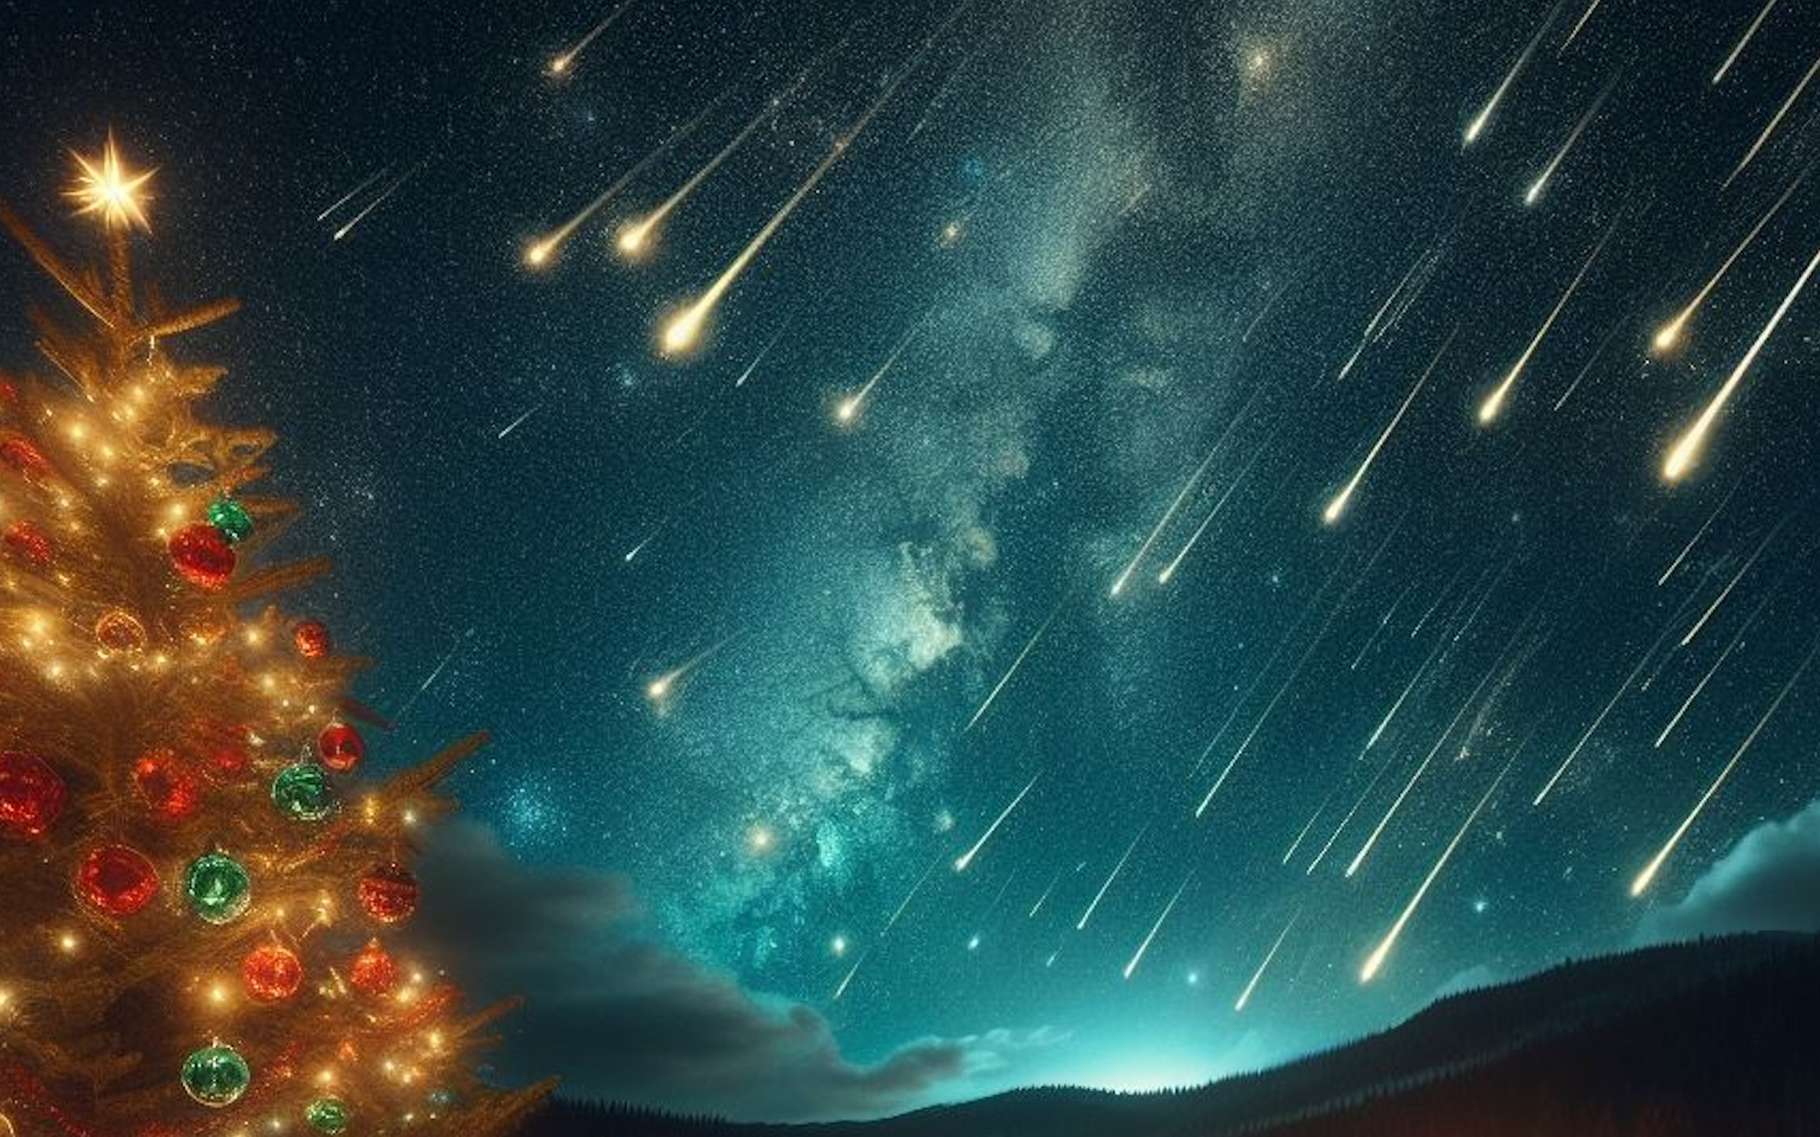 Étoiles filantes : préparez-vous à une nuit magique et intense avant Noël !